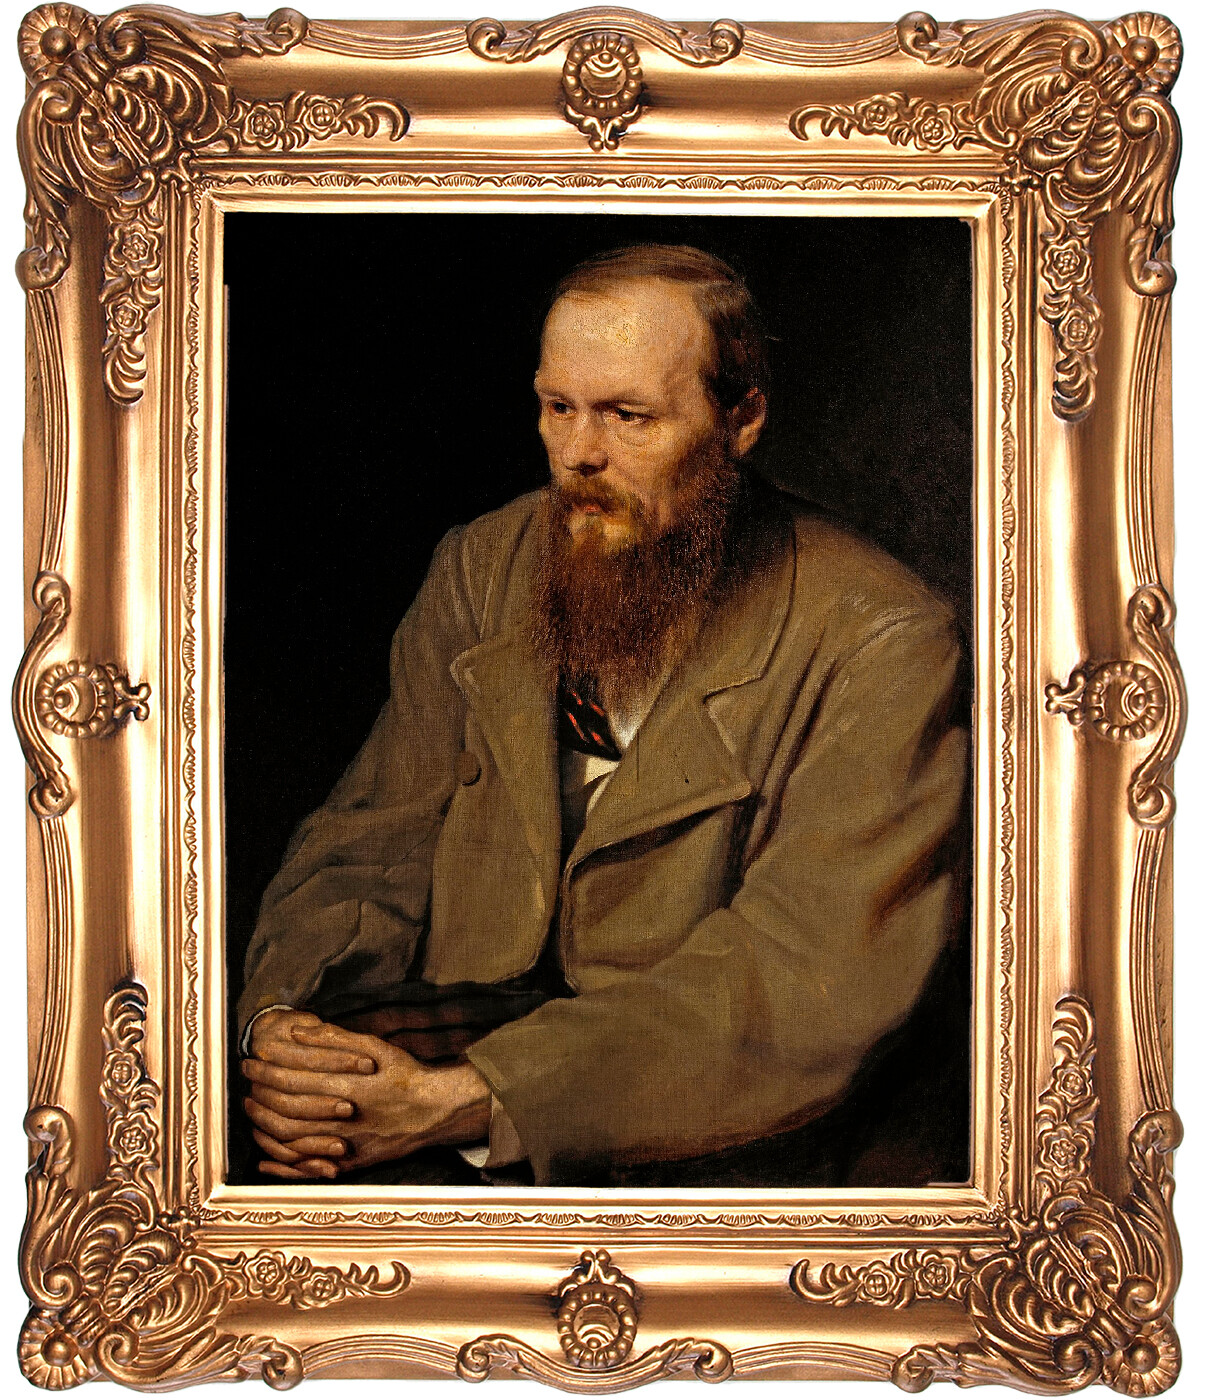 Vasily Perov. Portrait of Fyodor Dostoevsky, 1872